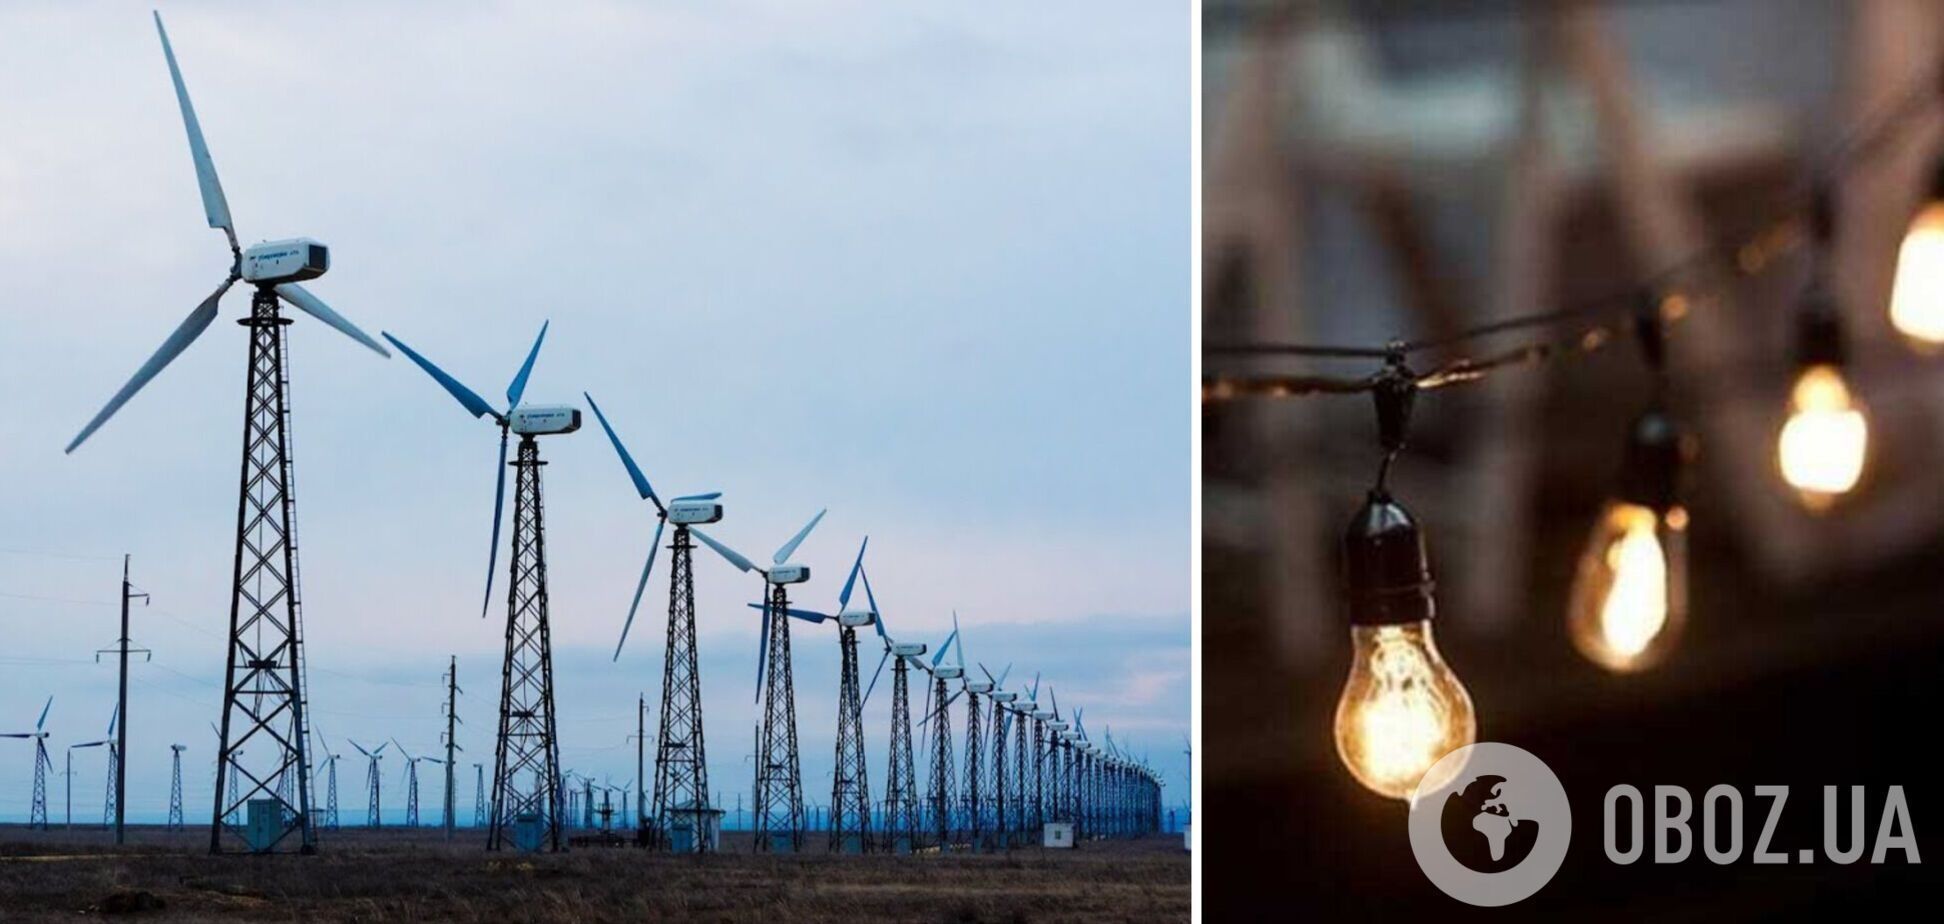 Нові вітроелектростанції можуть зменшити час відключень електроенергії на півдні України, – інвестори